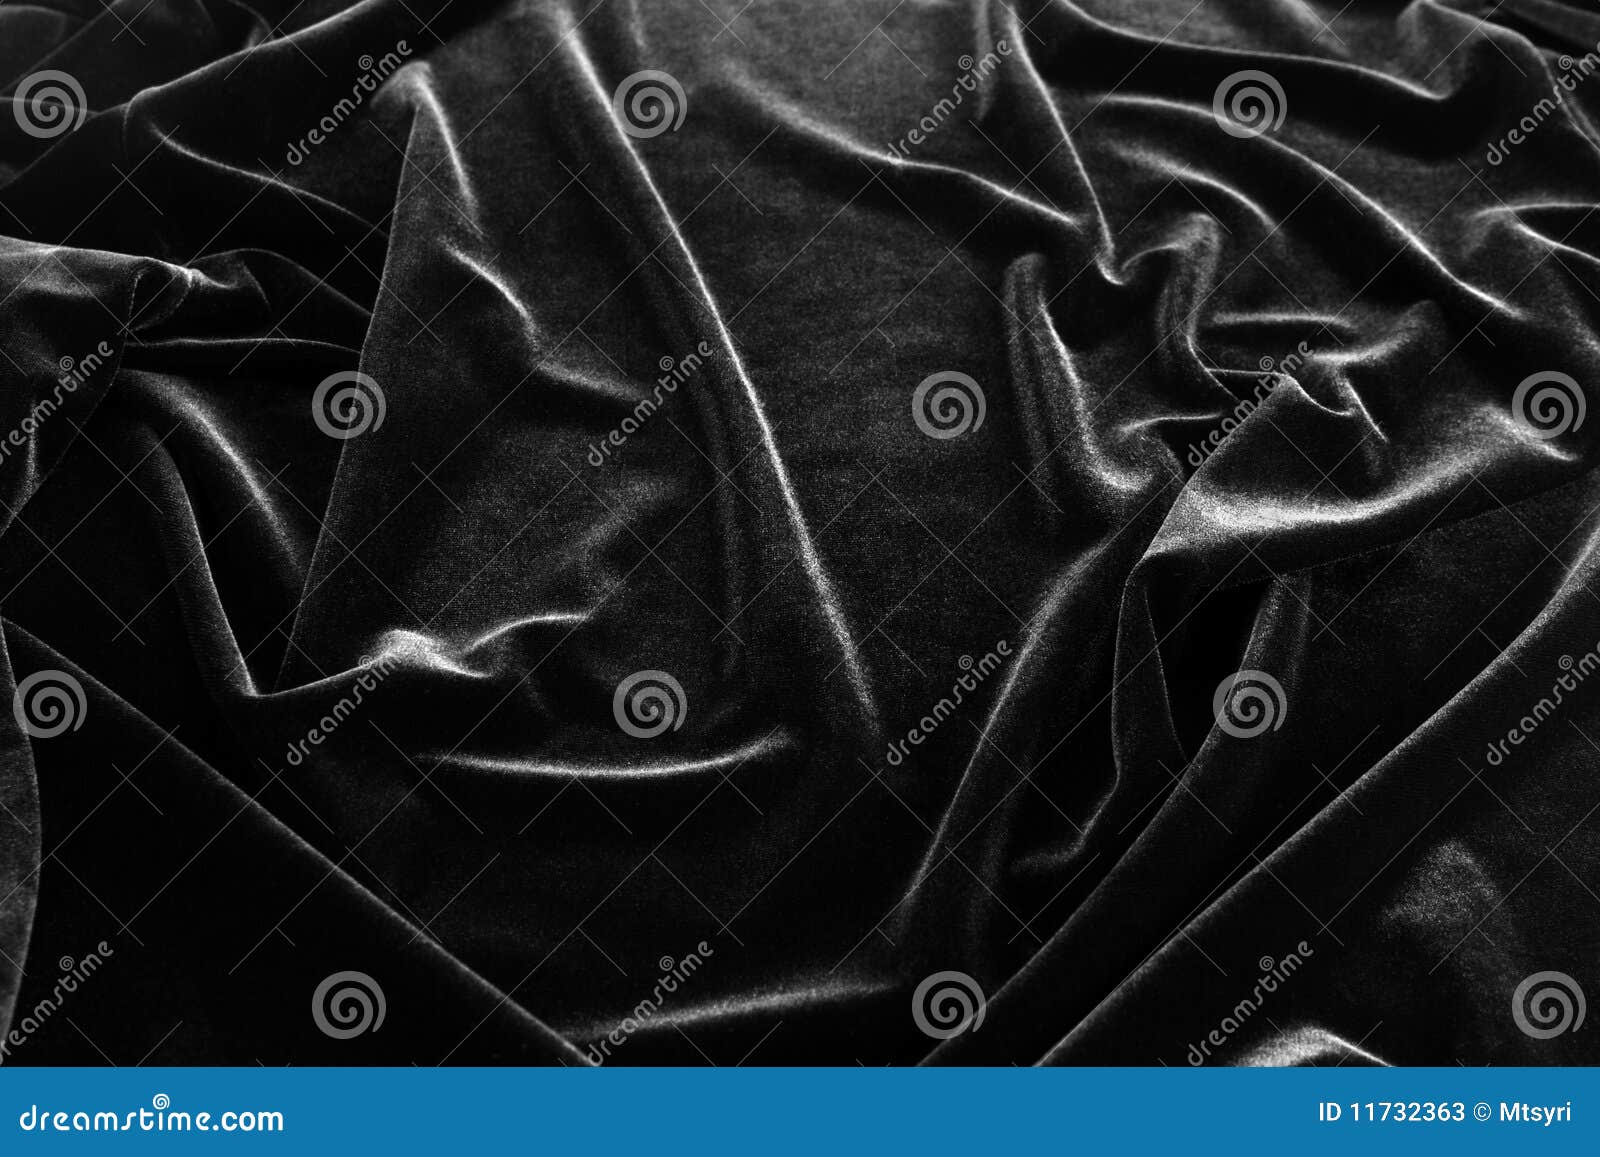 black pan-velvet background.